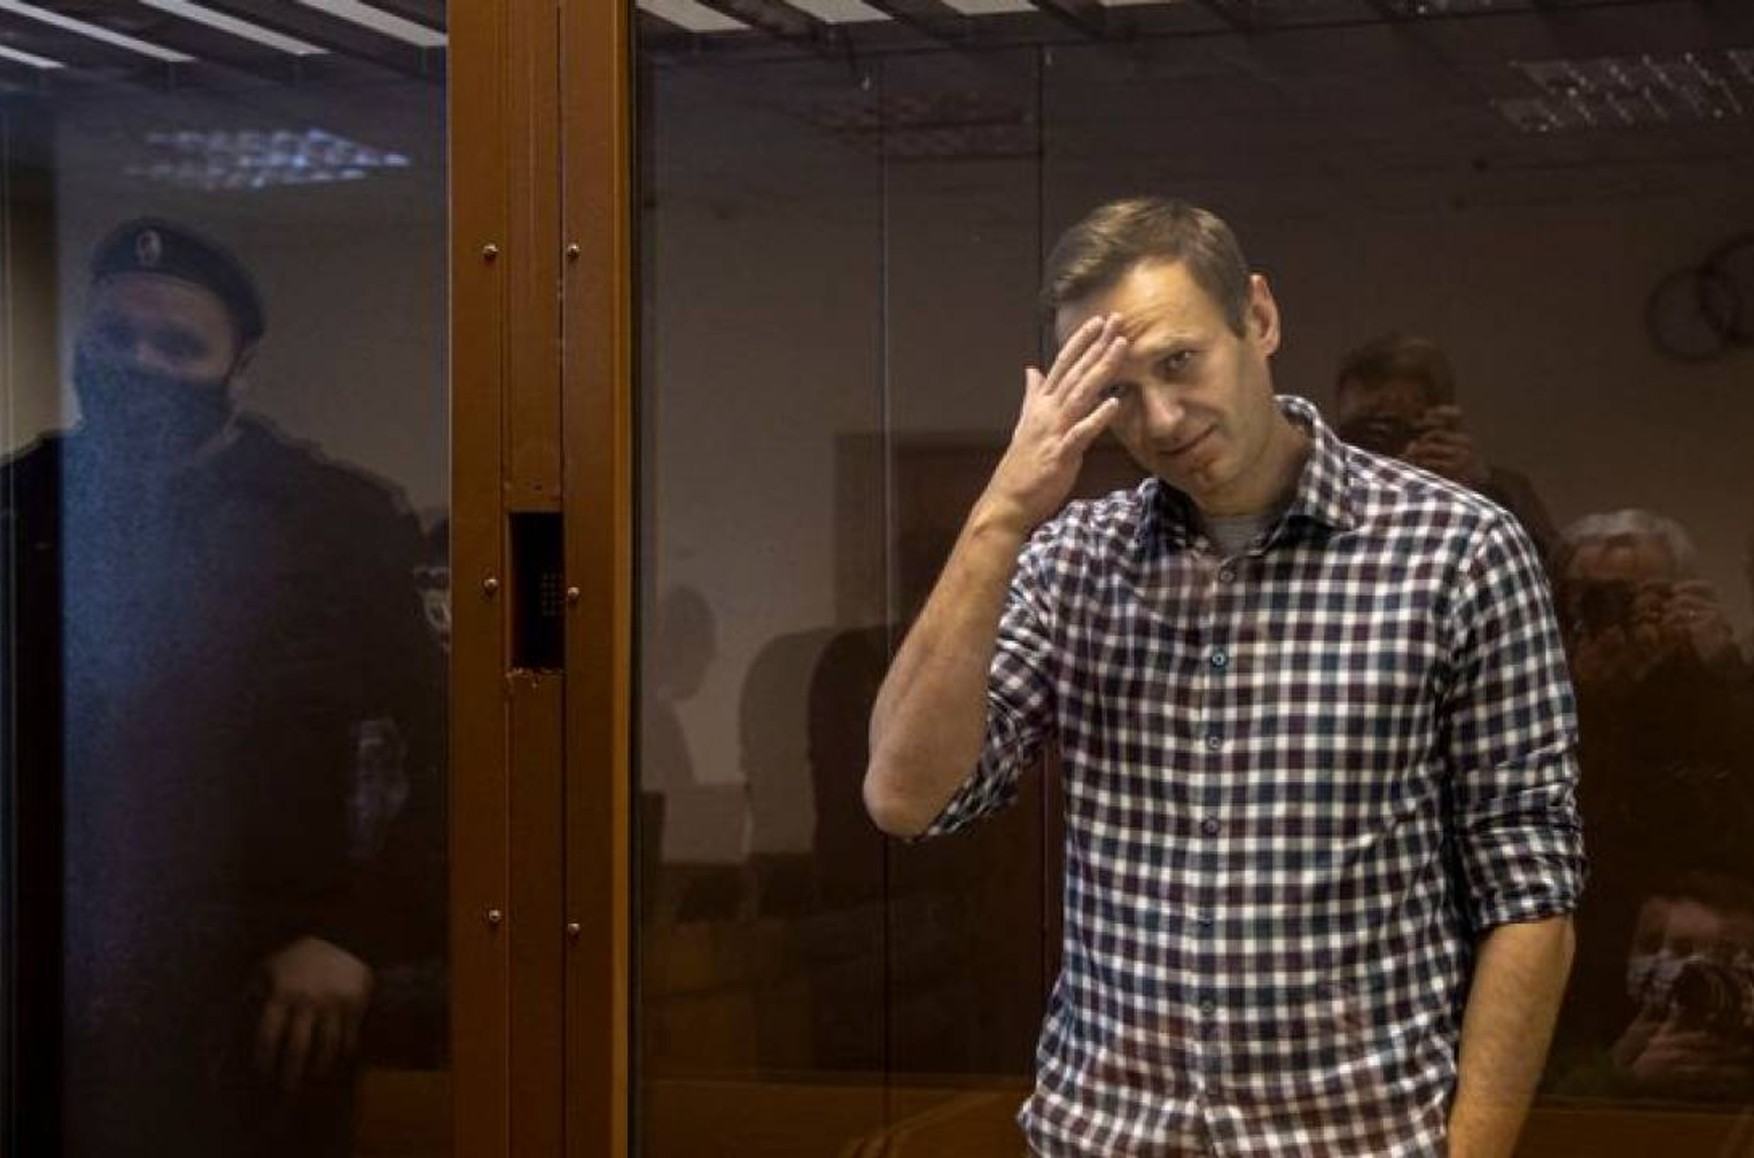 ЄС зажадав забезпечити Олексія Навального медичною допомогою і допустити до нього адвокатів